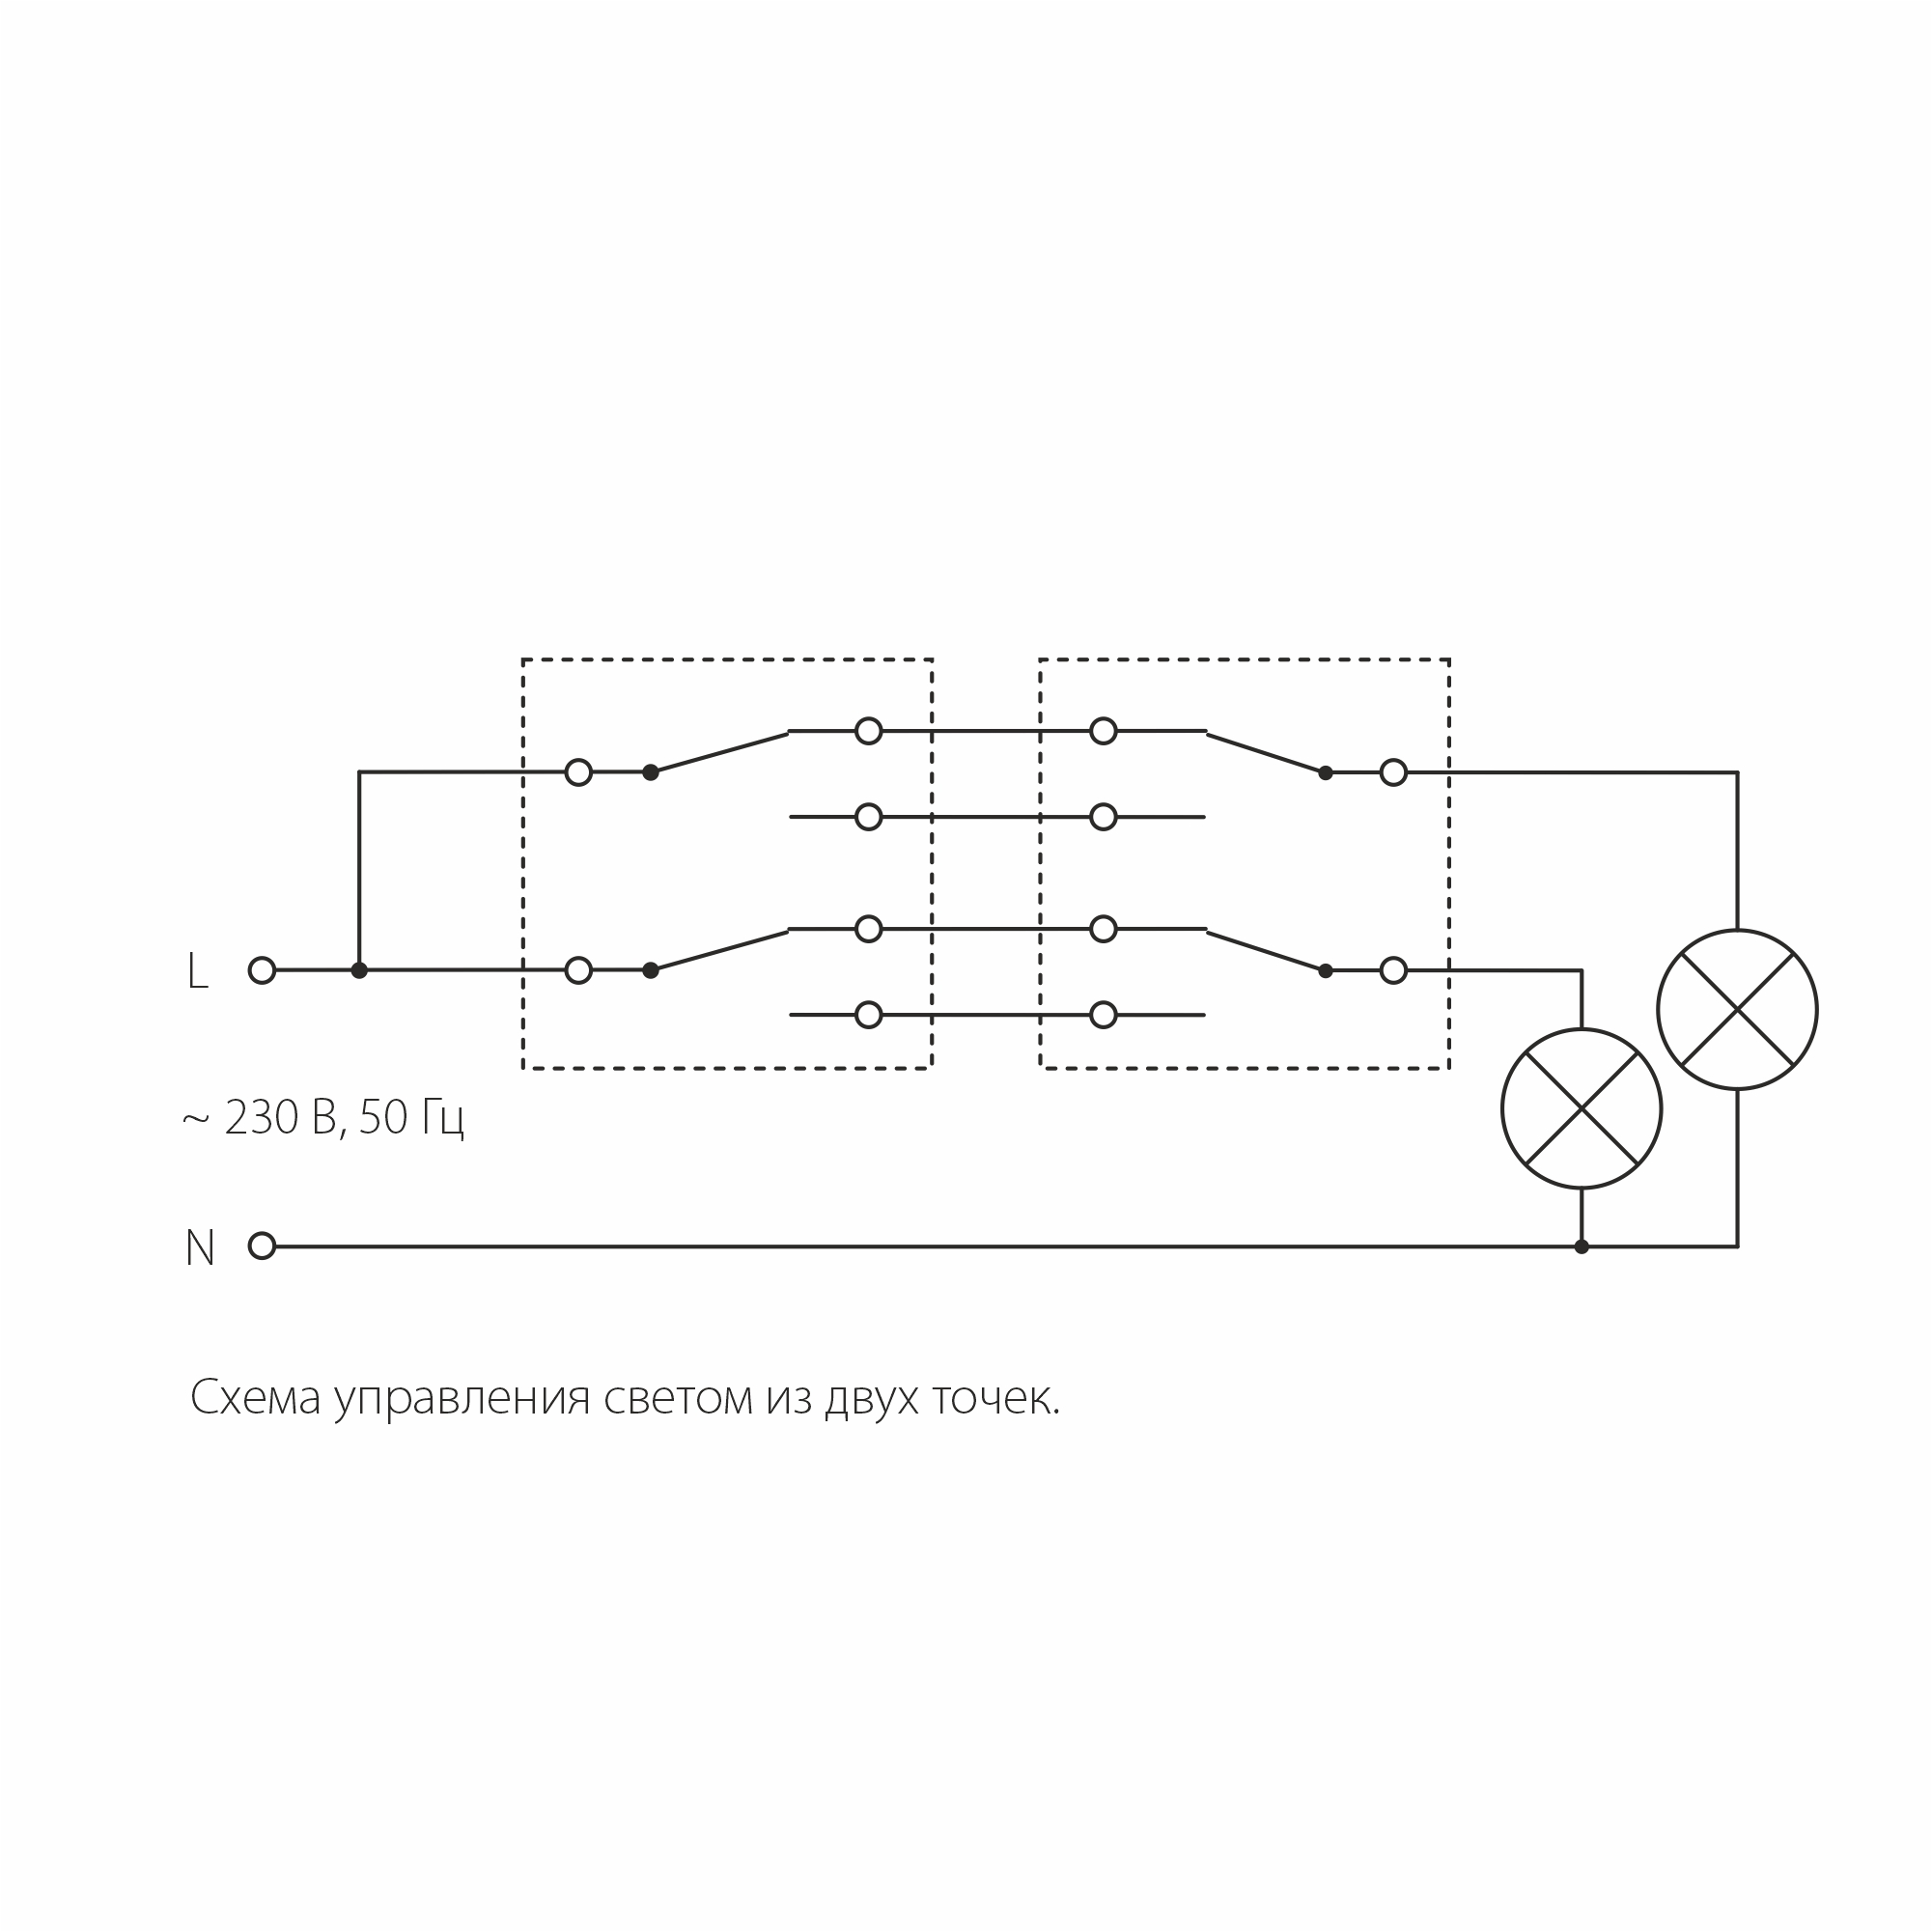 Соединение двух выключателей. Подключение двухклавишного проходного выключателя схема с 2 мест. Проходной переключатель двухклавишный схема подключения. Схема подключения двухклавишного проходного переключателя с 2х мест. Схема подключения двухклавишного проходного переключателя Werkel.